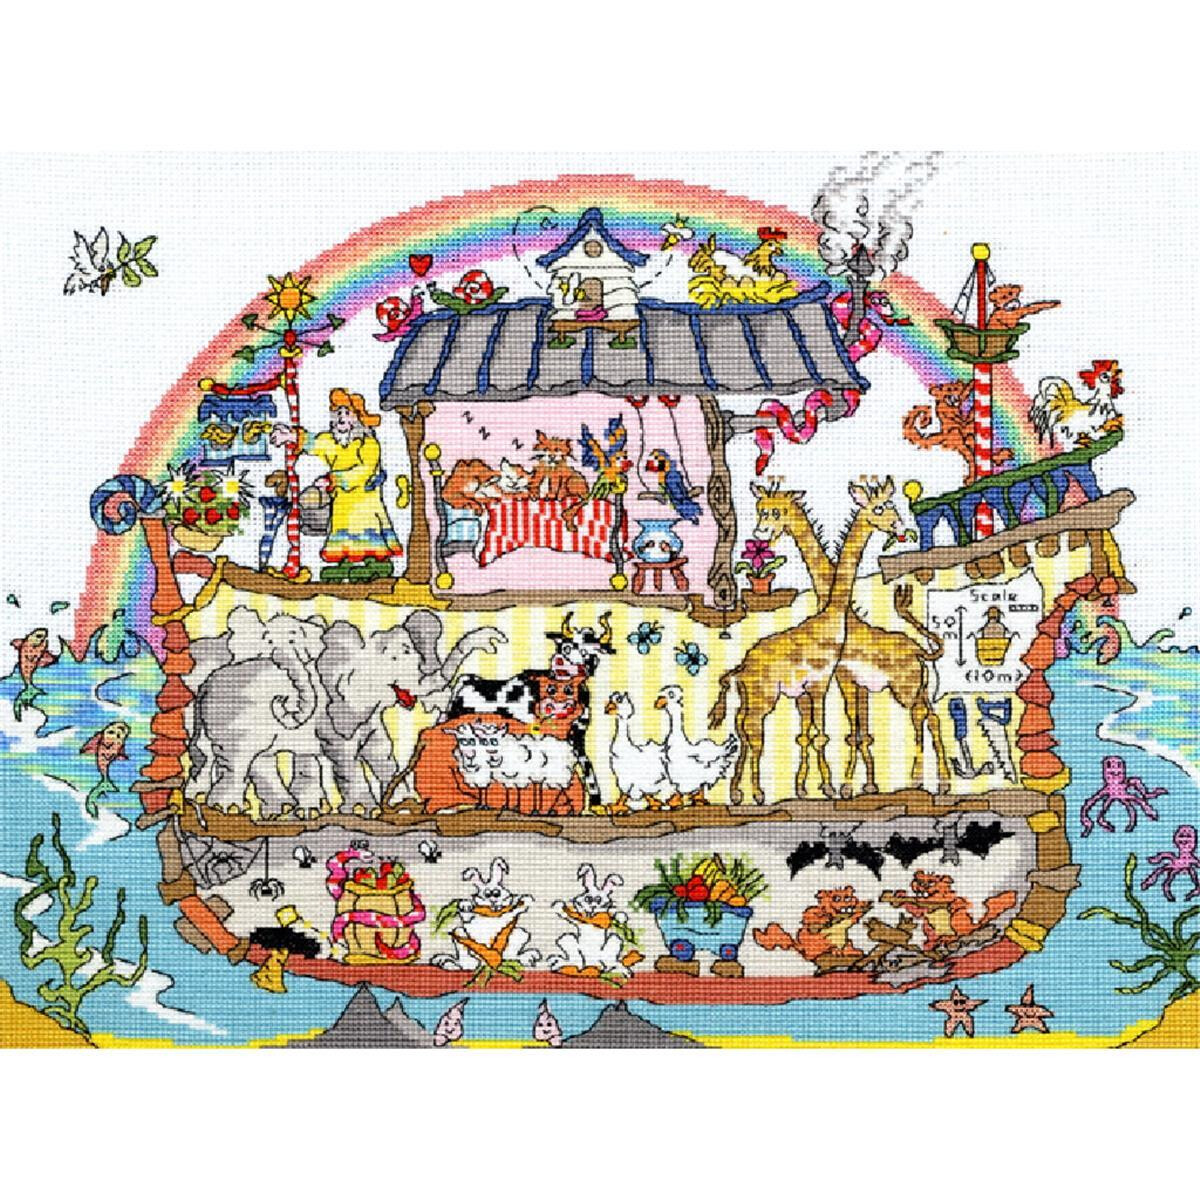 Eine farbenfrohe Illustration der Arche Noah mit...